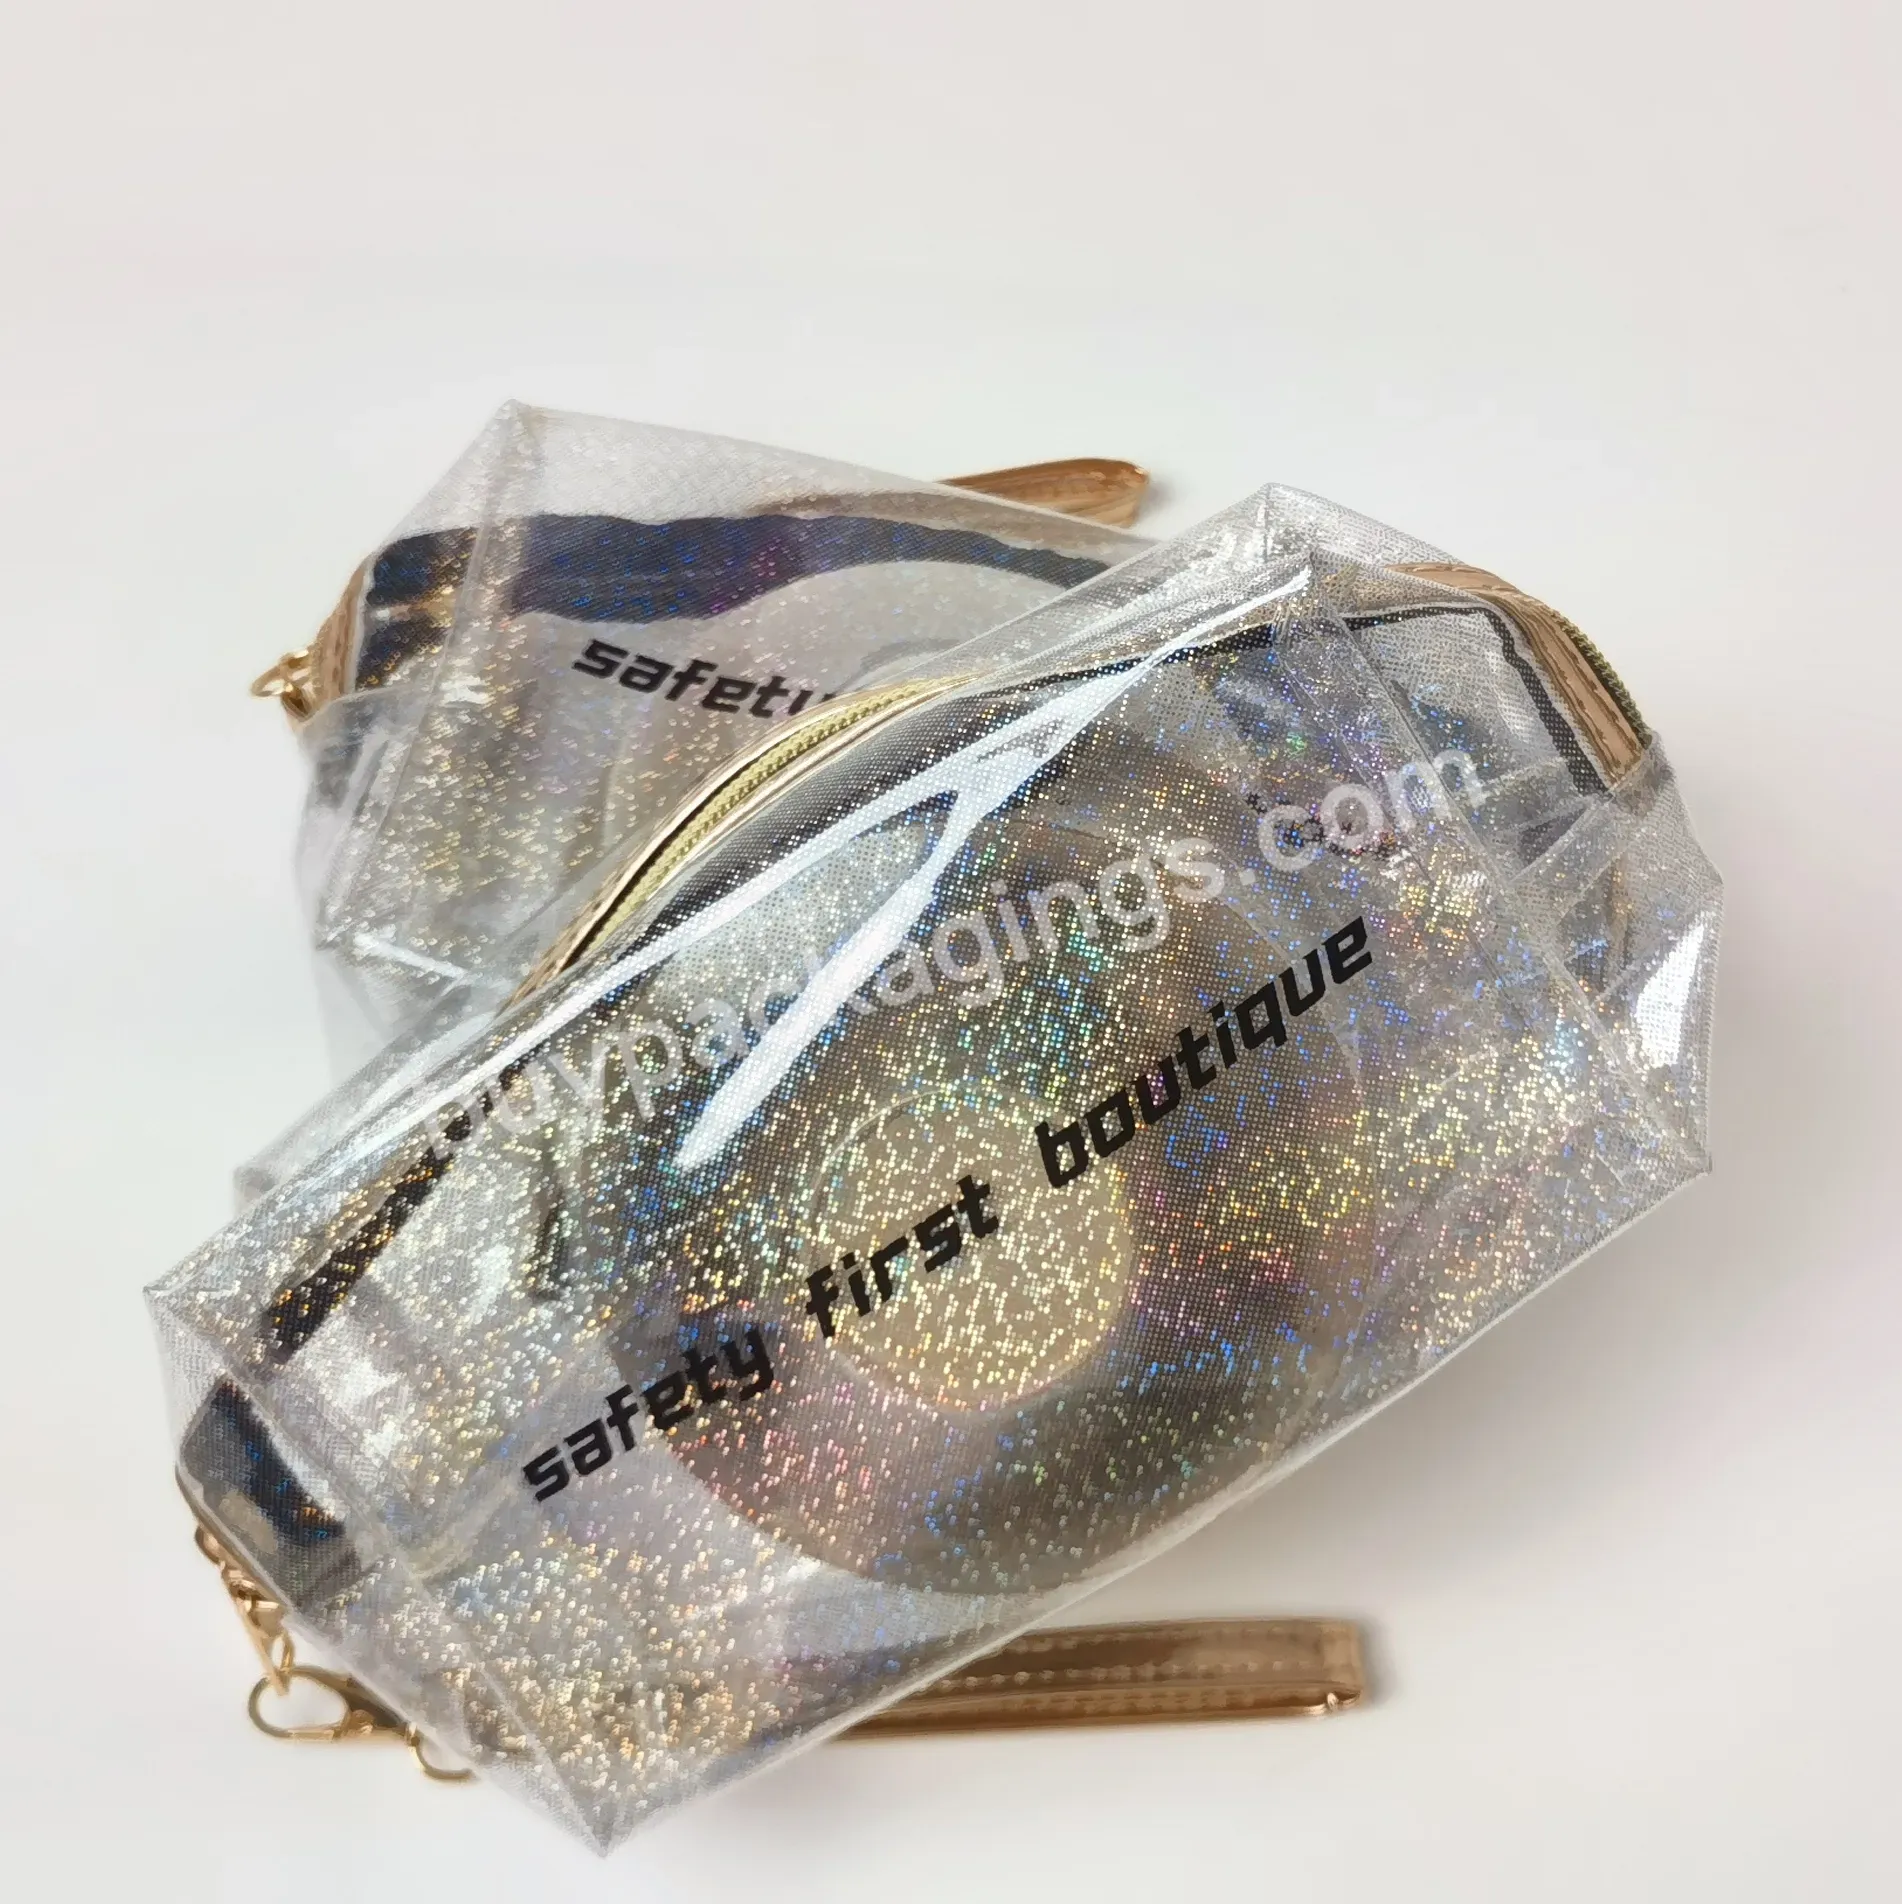 Wholesale Custom Holographic Waterproof Cosmetic Bag Transparent Pvc Makeup Bag Large Capacity For Convenient Travel - Buy Holographic Waterproof Cosmetic Bag,Pvc Makeup Bag,Cosmetic Bag.